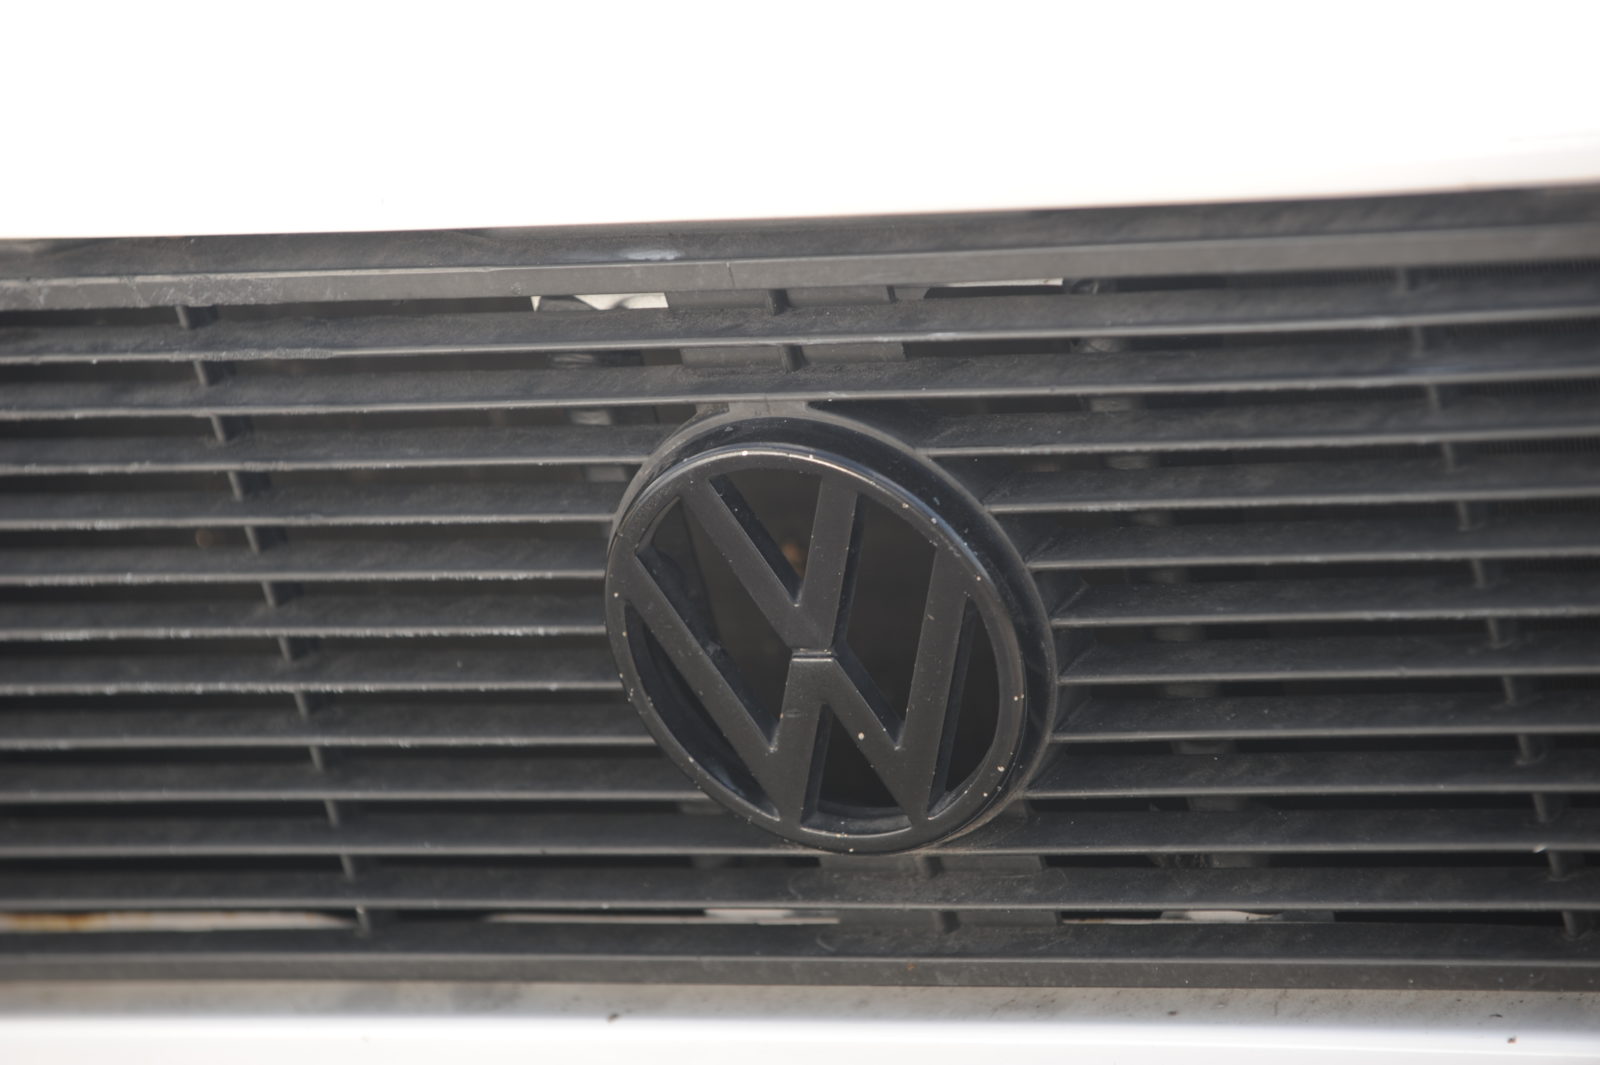 Tuning VW Golf Mk1 logo vw na grillu